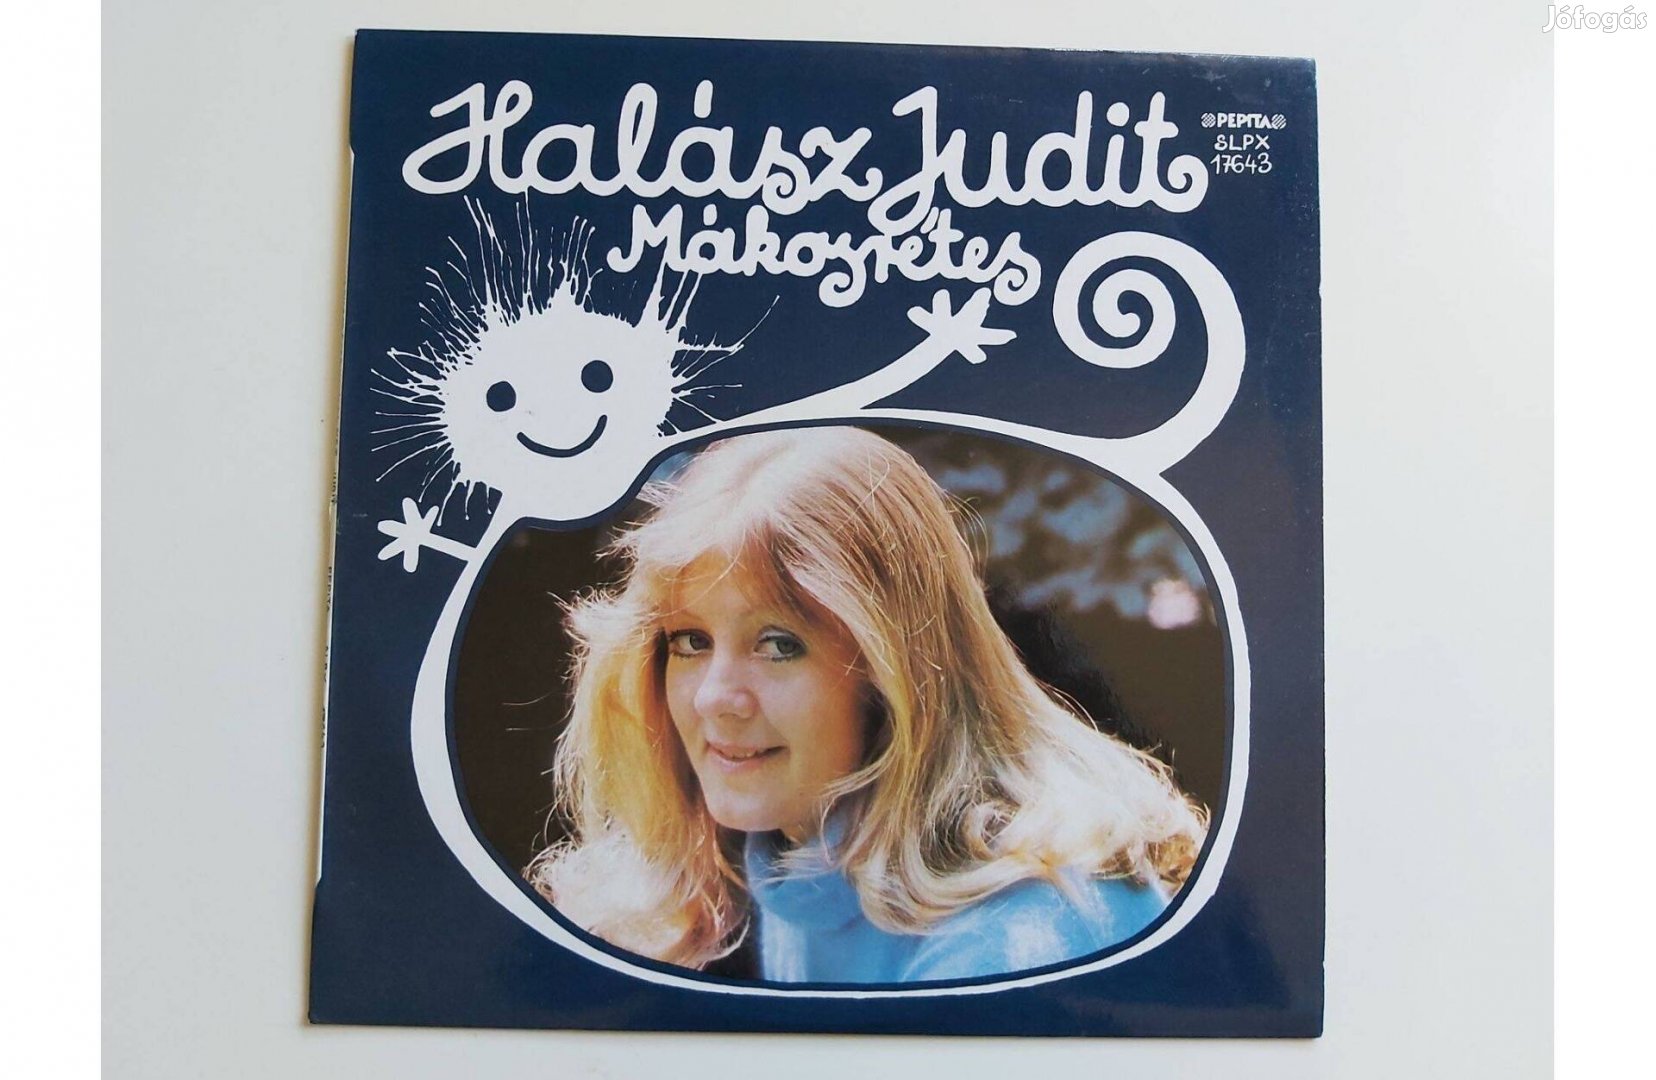 Halász Judit - Mákosrétes (LP album) 1980